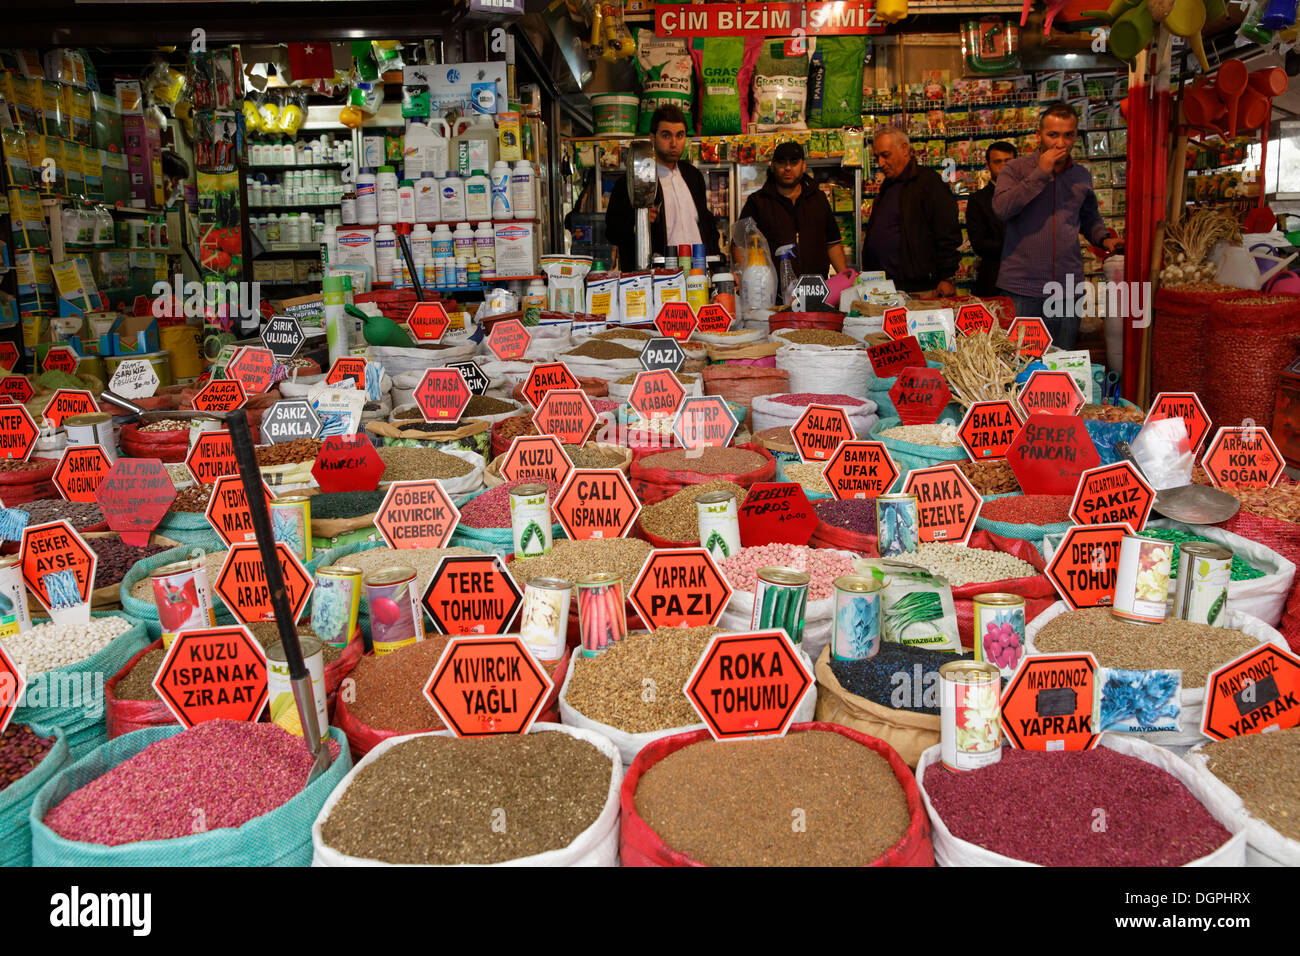 Les haricots et d'autres denrées alimentaires dans des sacs, Bazar égyptien ou marché aux épices, Misir Çarşısı, Eminönü, Istanbul, côté Européen Banque D'Images